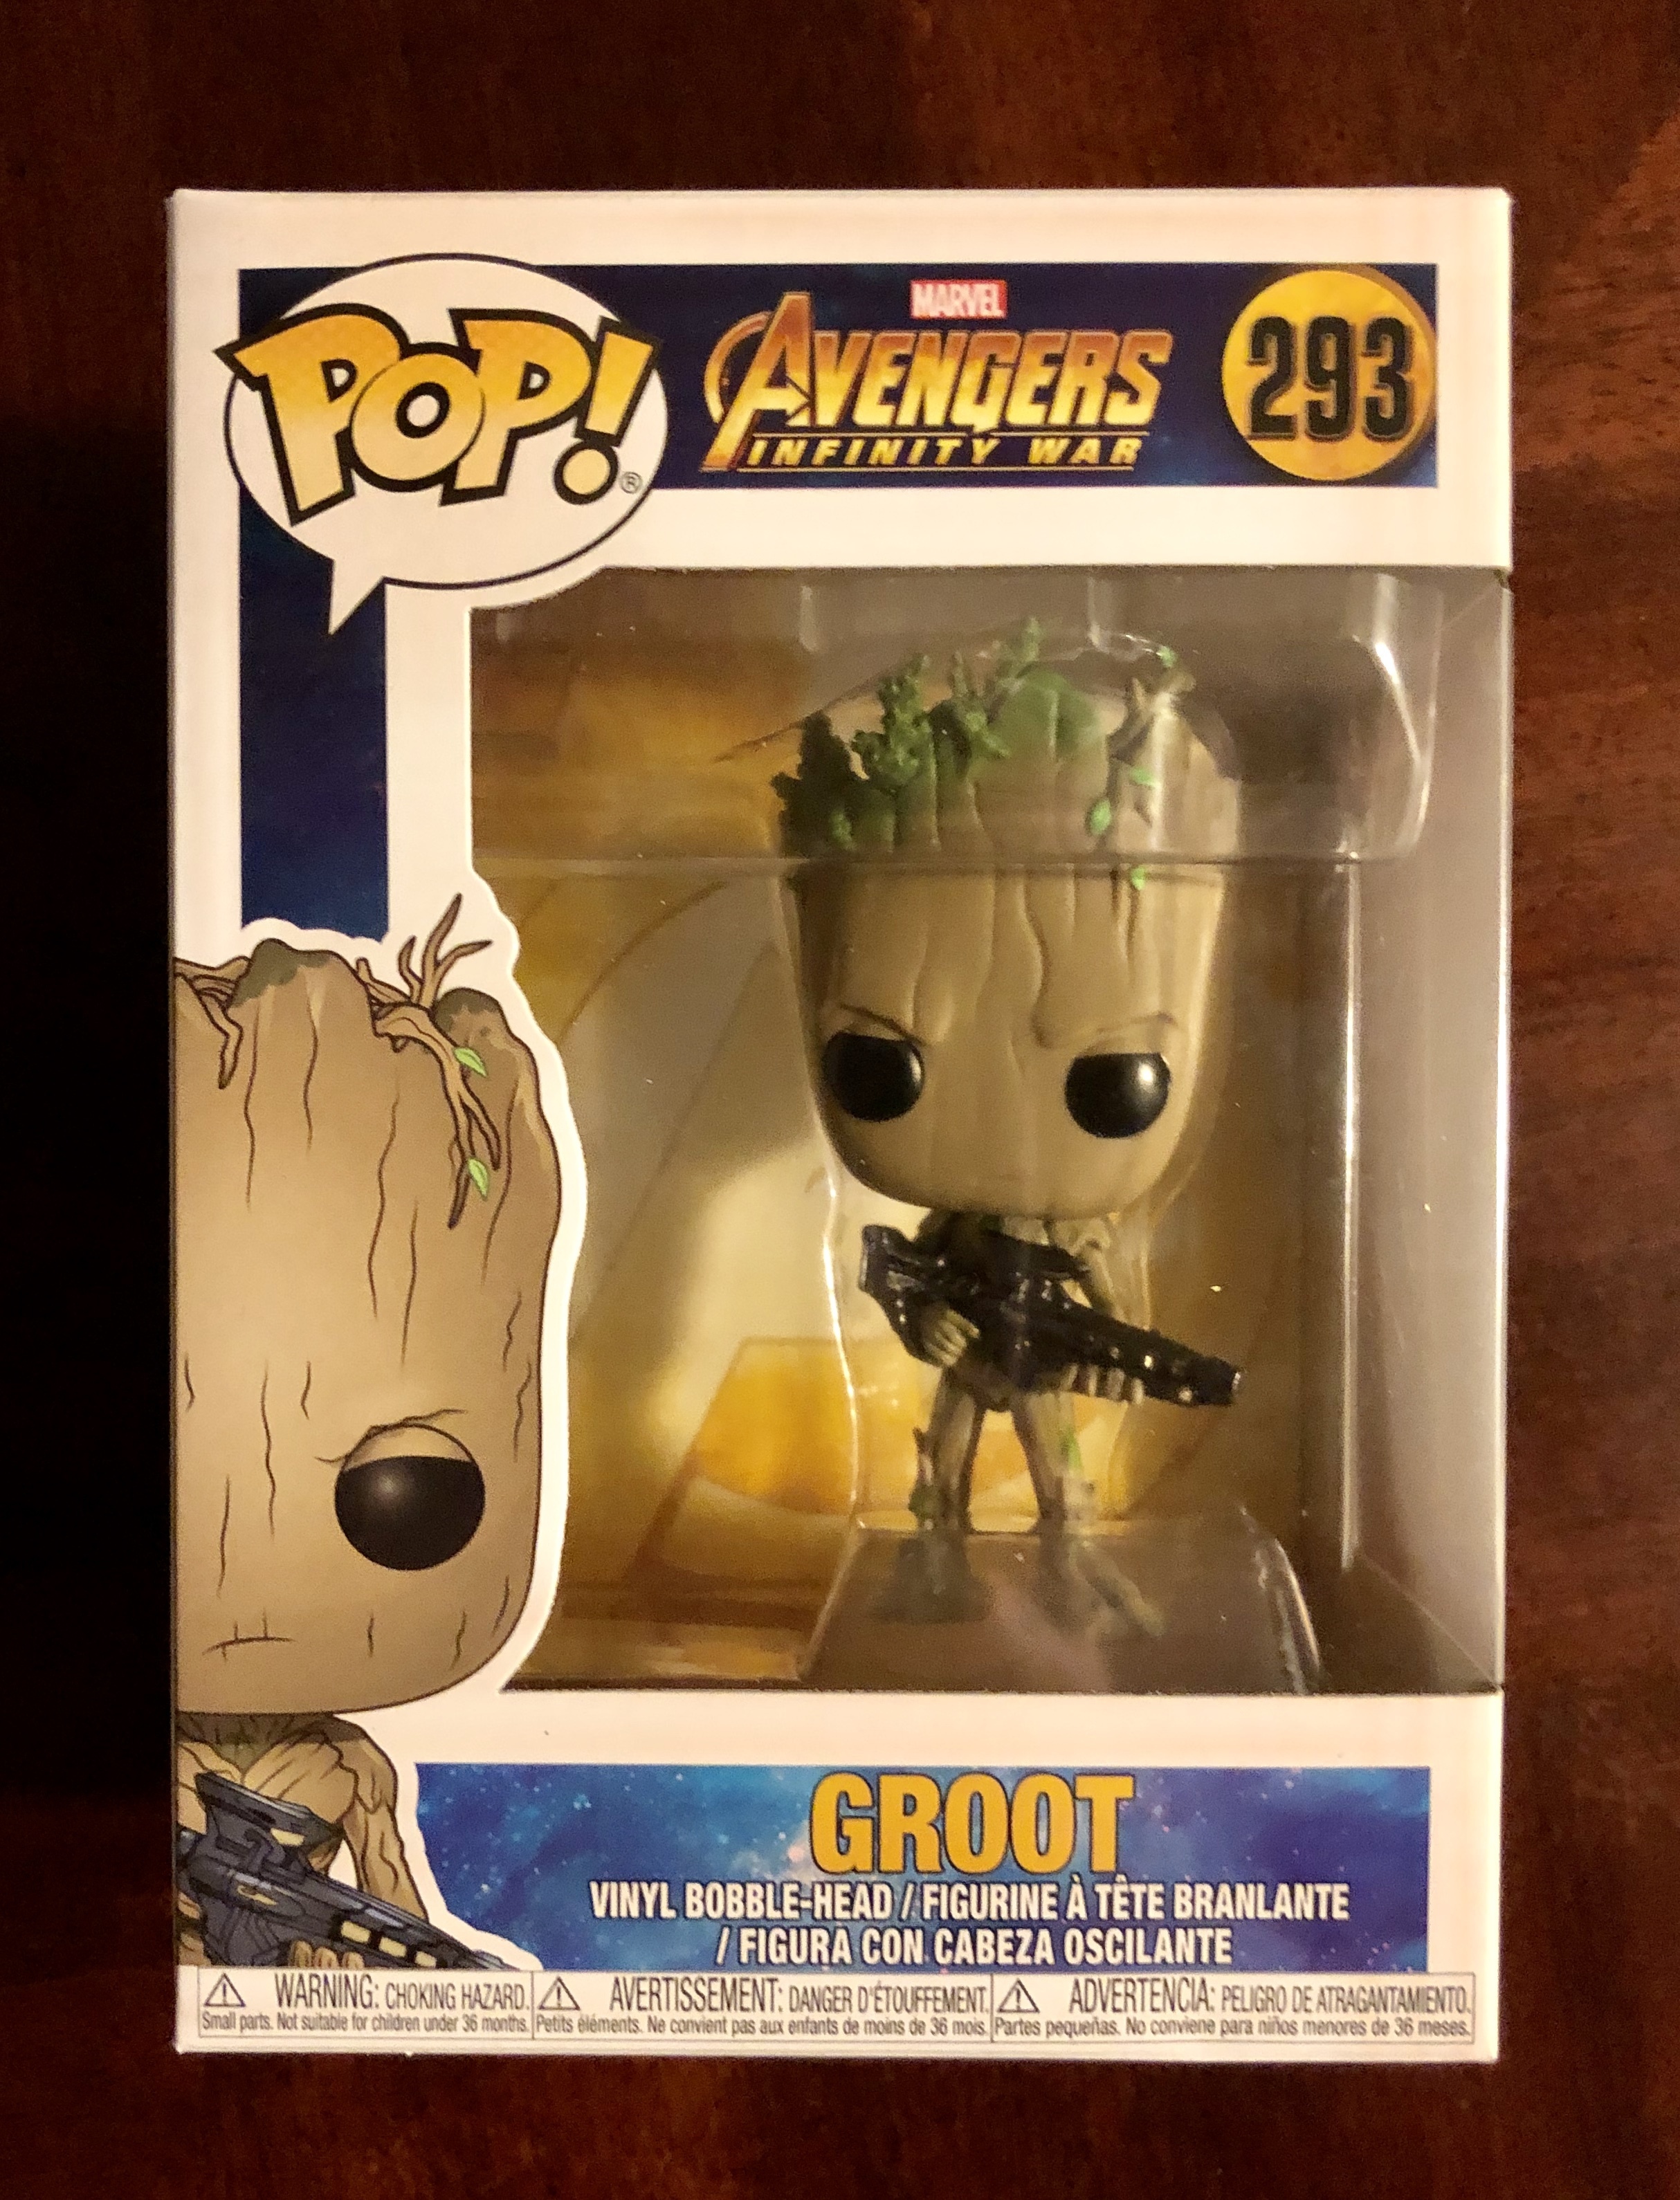 Avengers Infinity War POP! Vinyl Figurine Groot 293